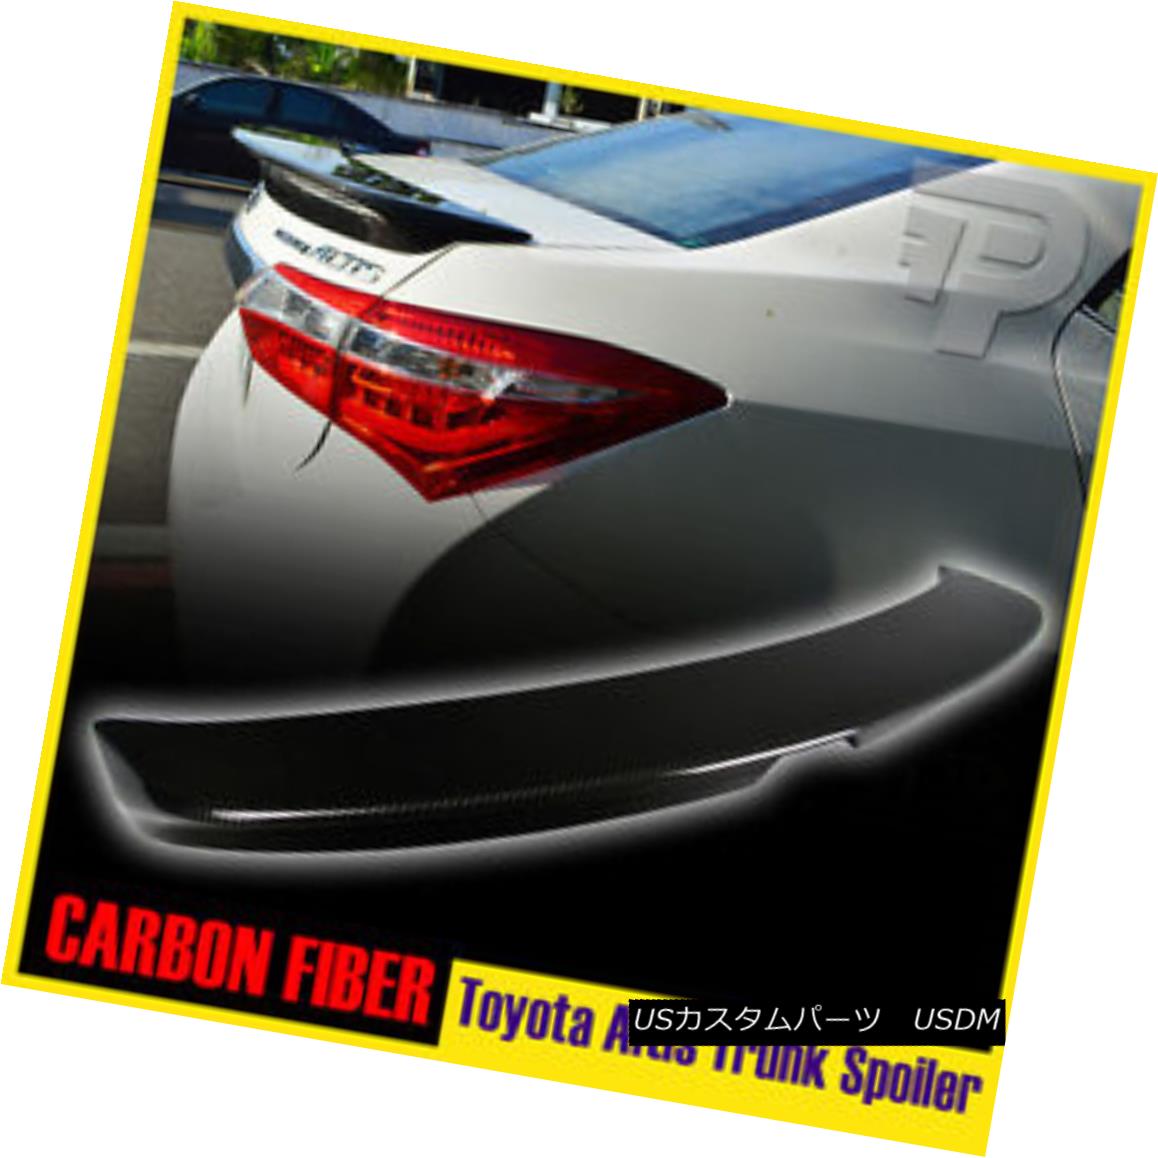 エアロパーツ For Toyota Corolla Altis 4DR Sedan EUR 2014+ Rear Trunk Spoiler Carbon Fiber トヨタカローラアルティス4DRセダン用2014年以降のリアトランクスポイラーカーボンファイバー